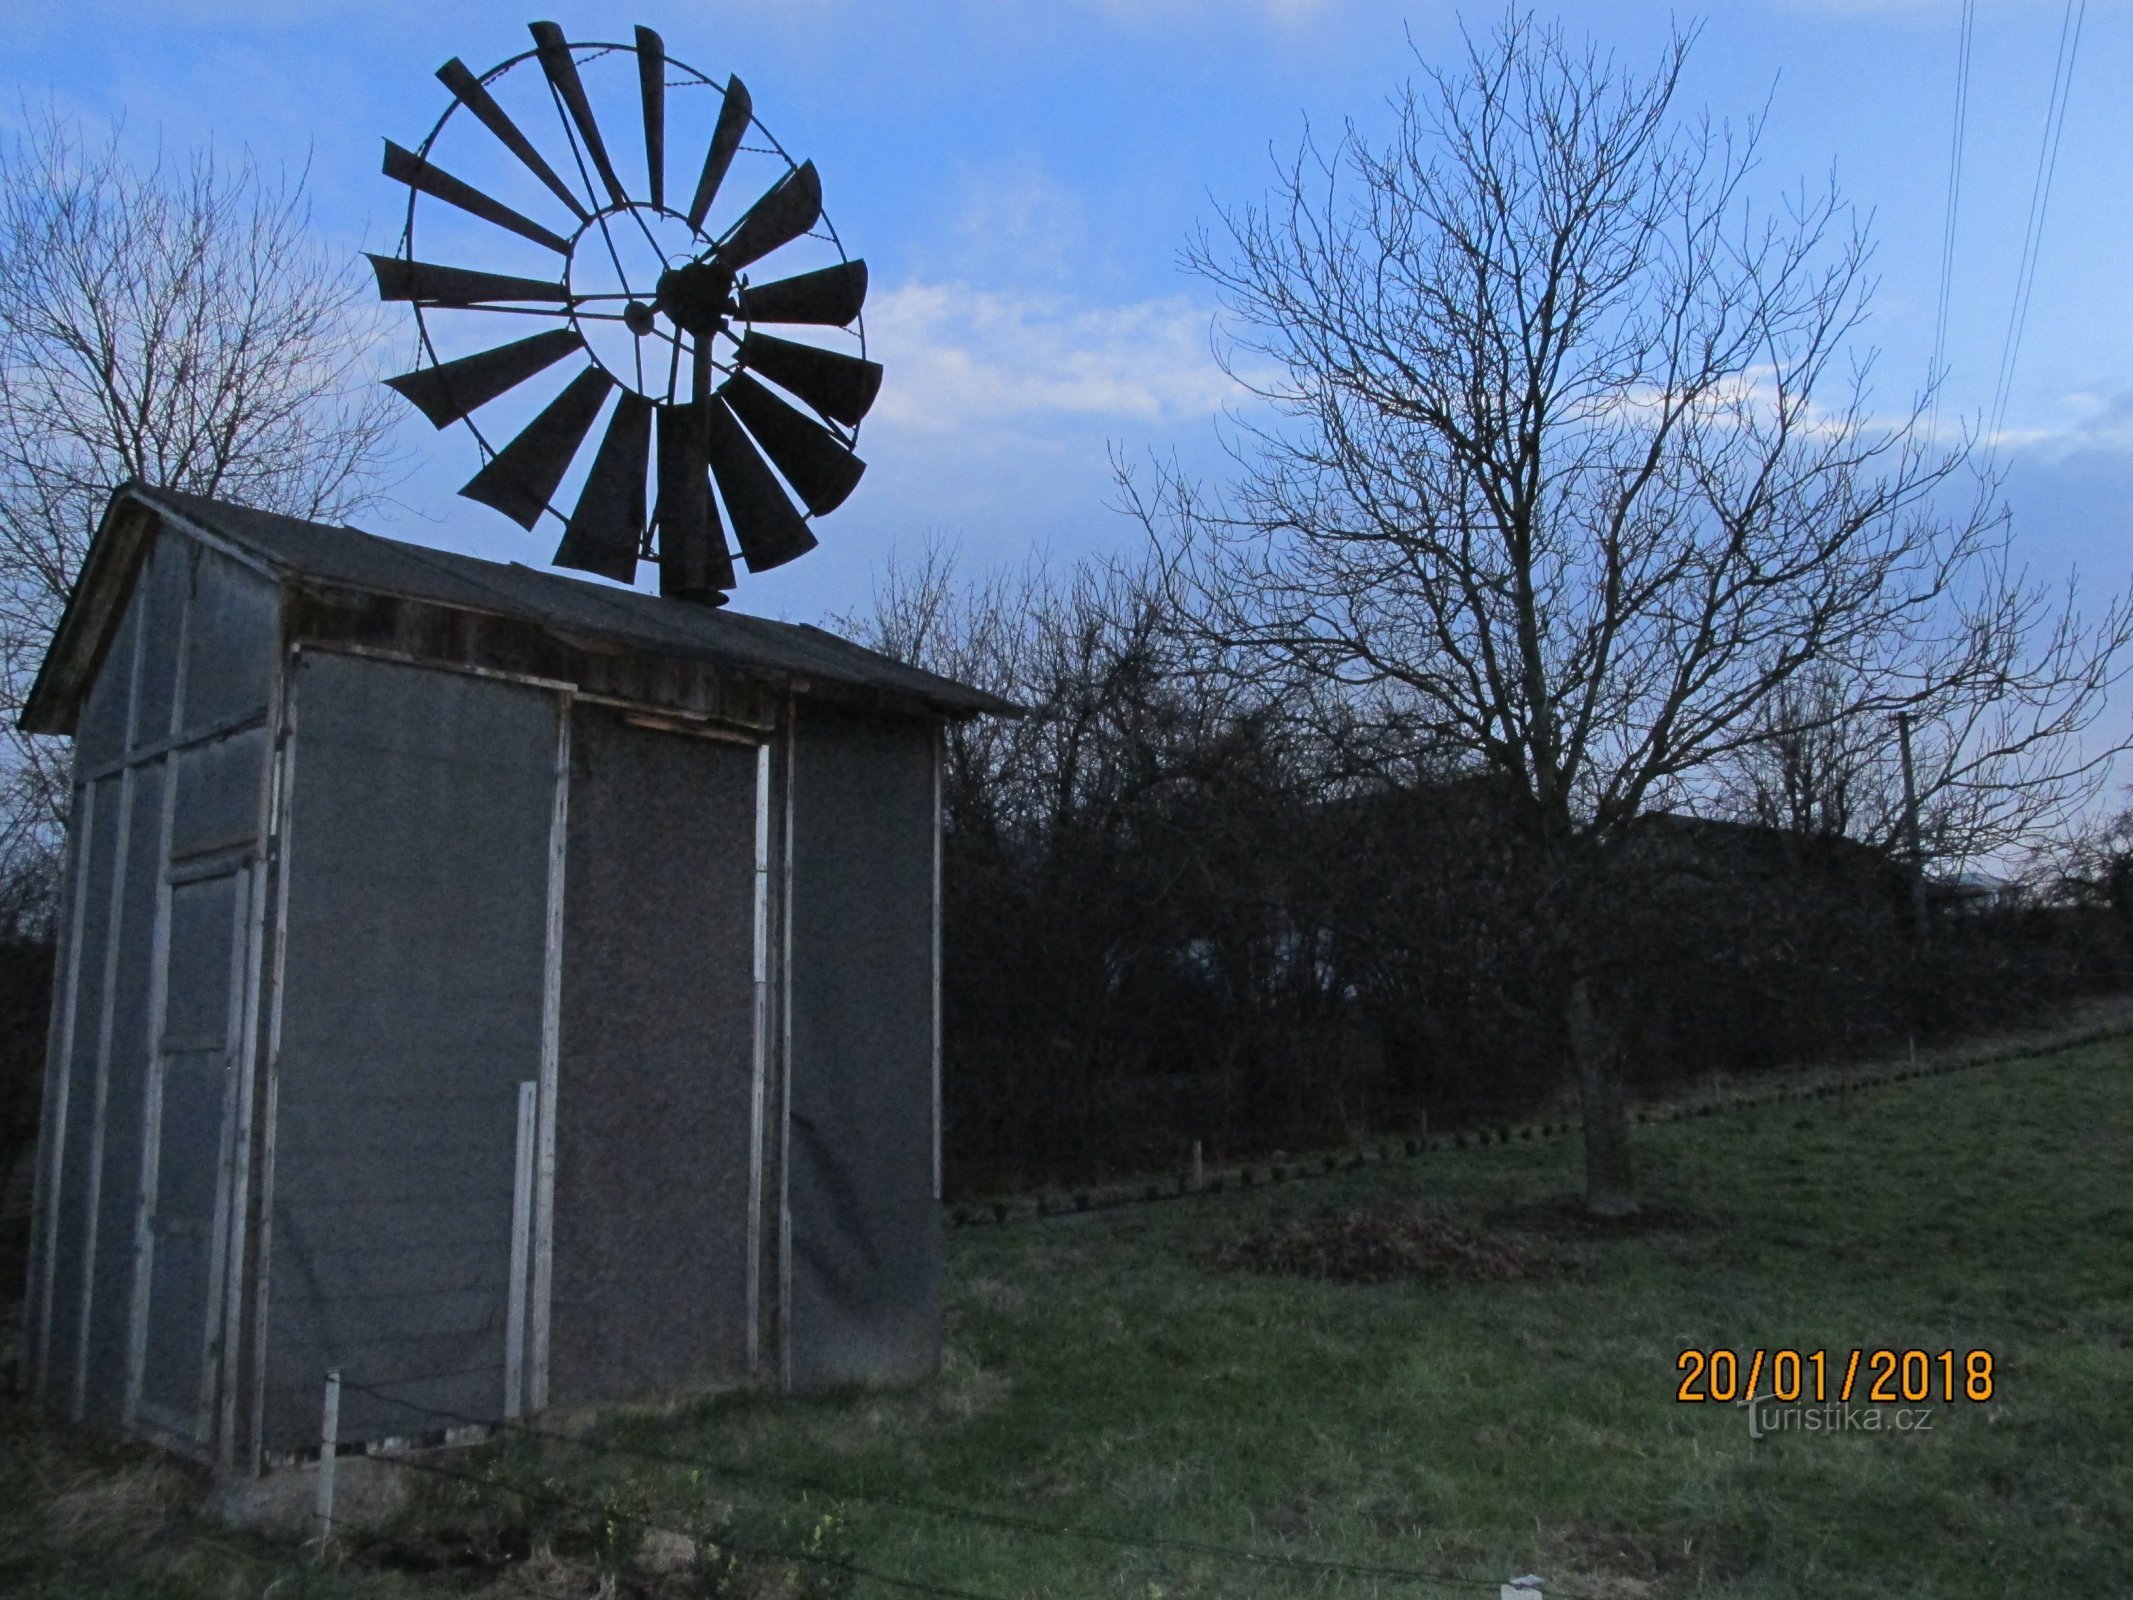 Windmühle mit Turbine in Havířov